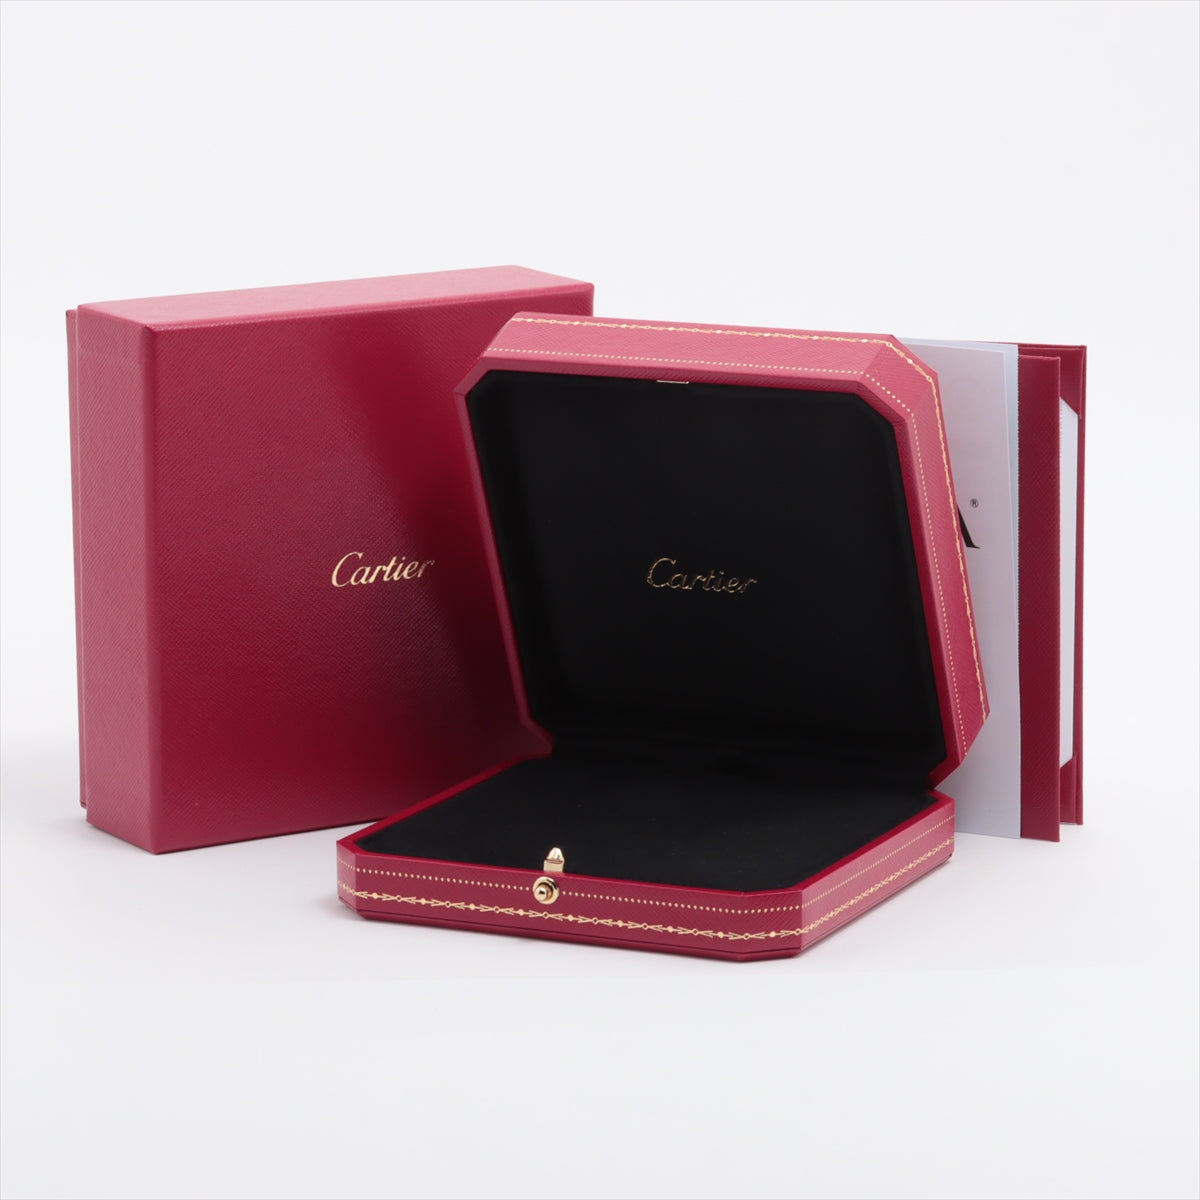 Cartier C Ducaltier diamond necklace 750 (WG) 2.6g 0.23 H VVS2 EX NONE CRN7413700